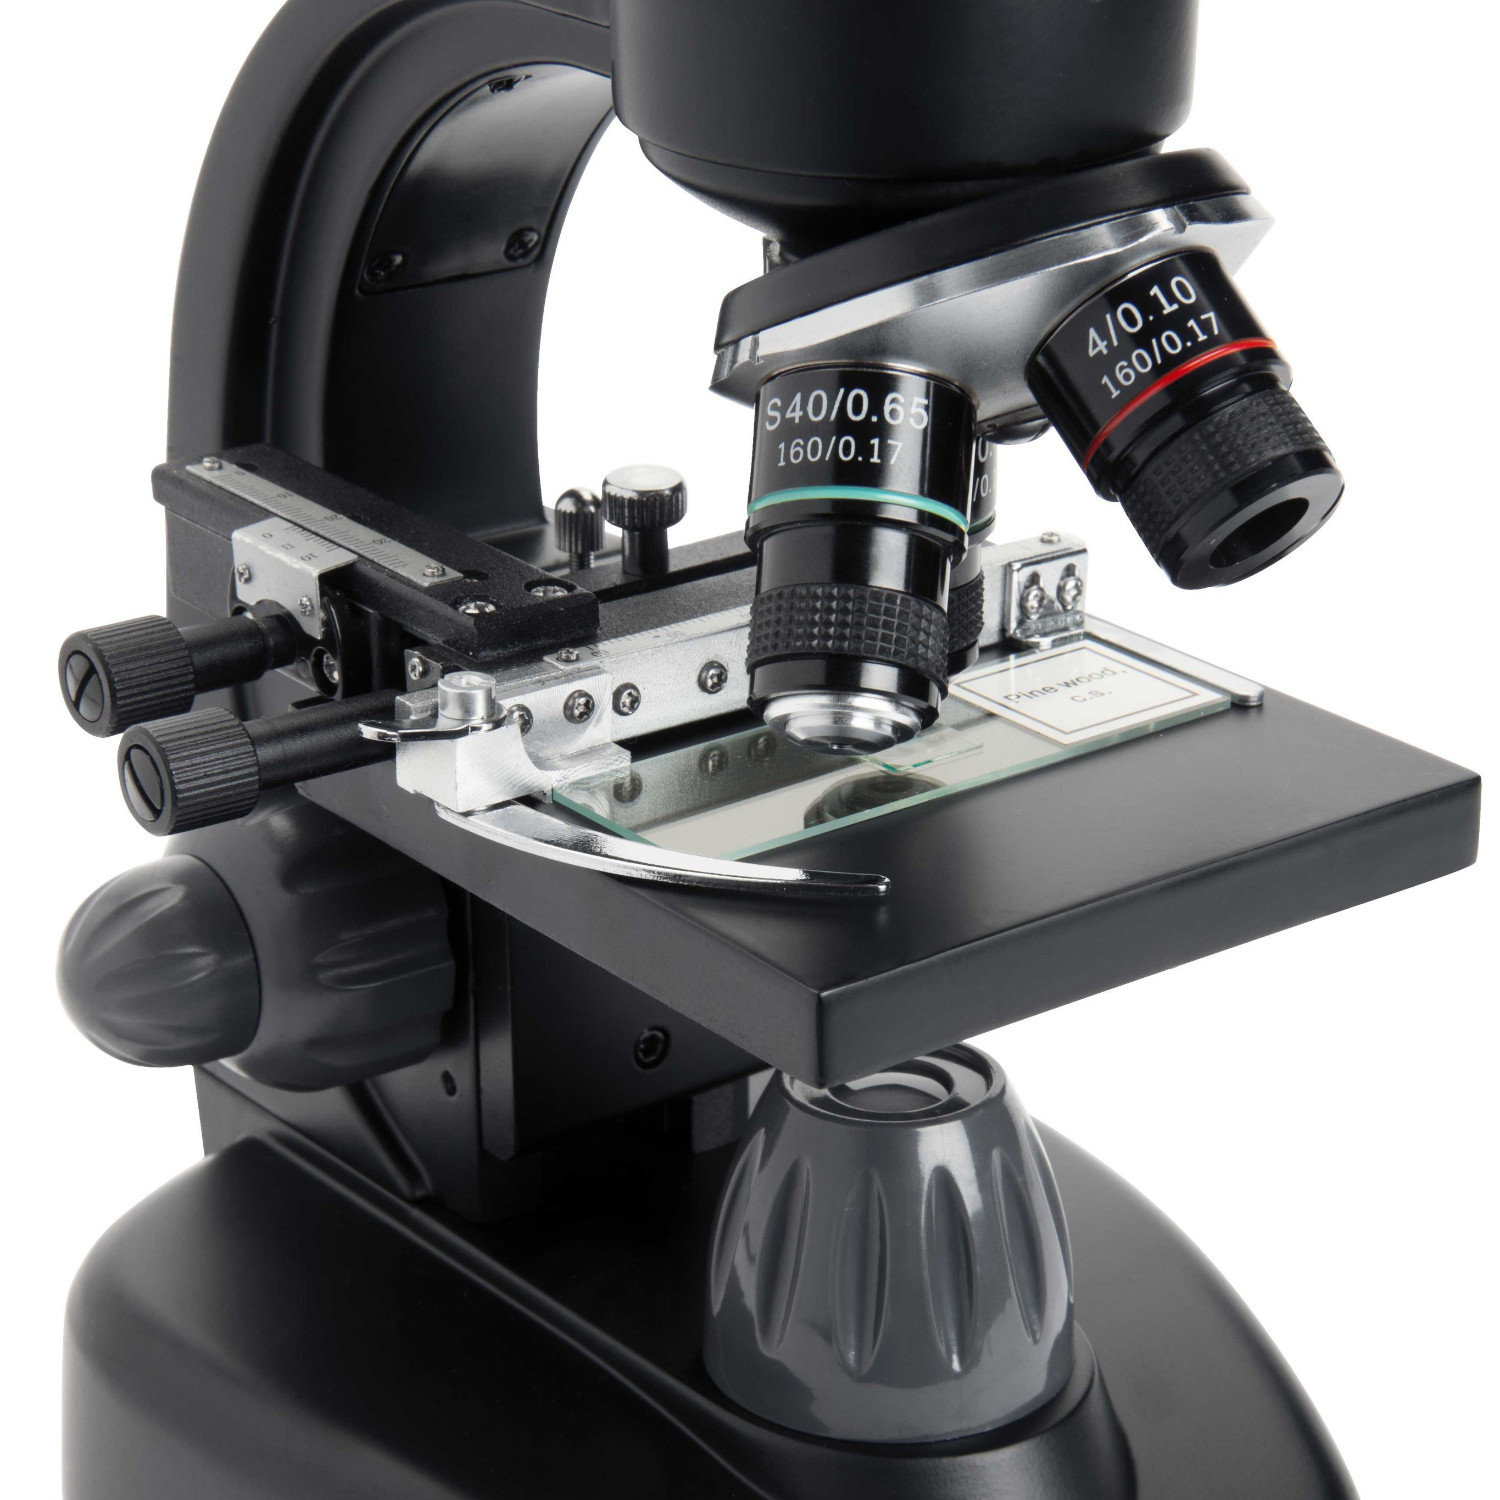 CELESTRON 顕微鏡 TetraView LCD デジタル顕微鏡